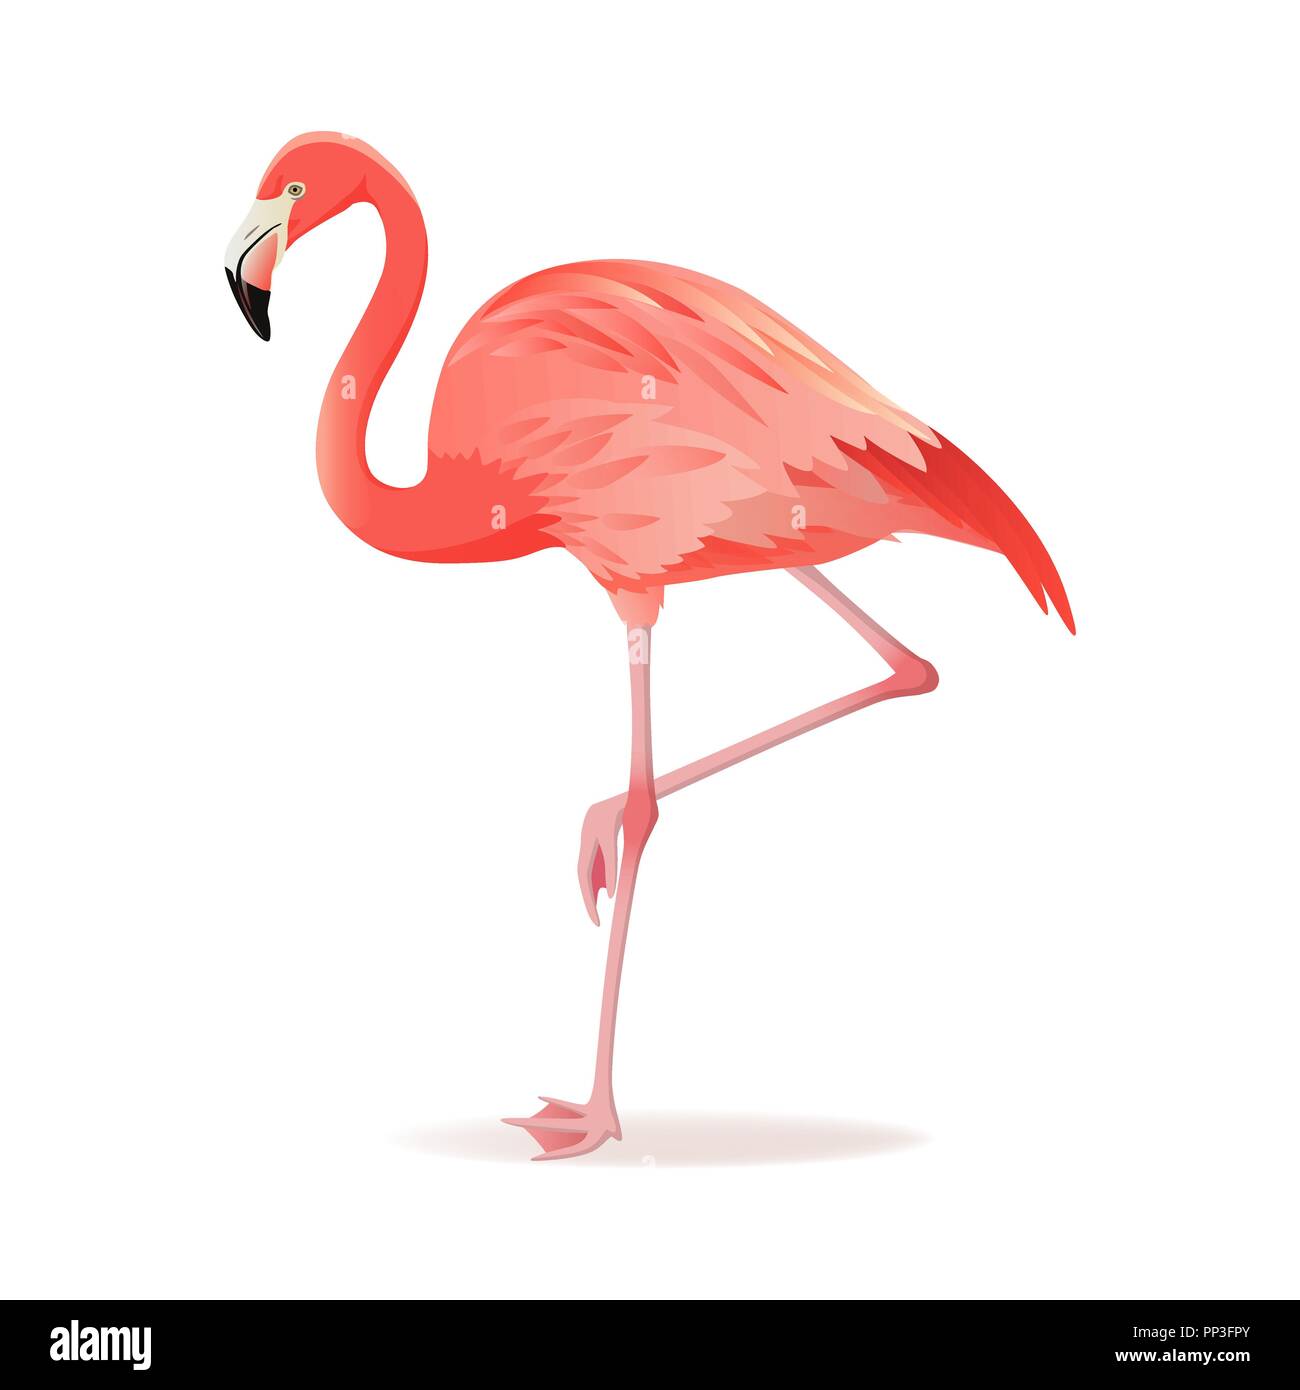 Rot und rosa Flamingo Vector Illustration. Exotischen Vogel stehen, dekorative Elemente Sammlung. Flamingo isoliert auf weißem Hintergrund Stock Vektor